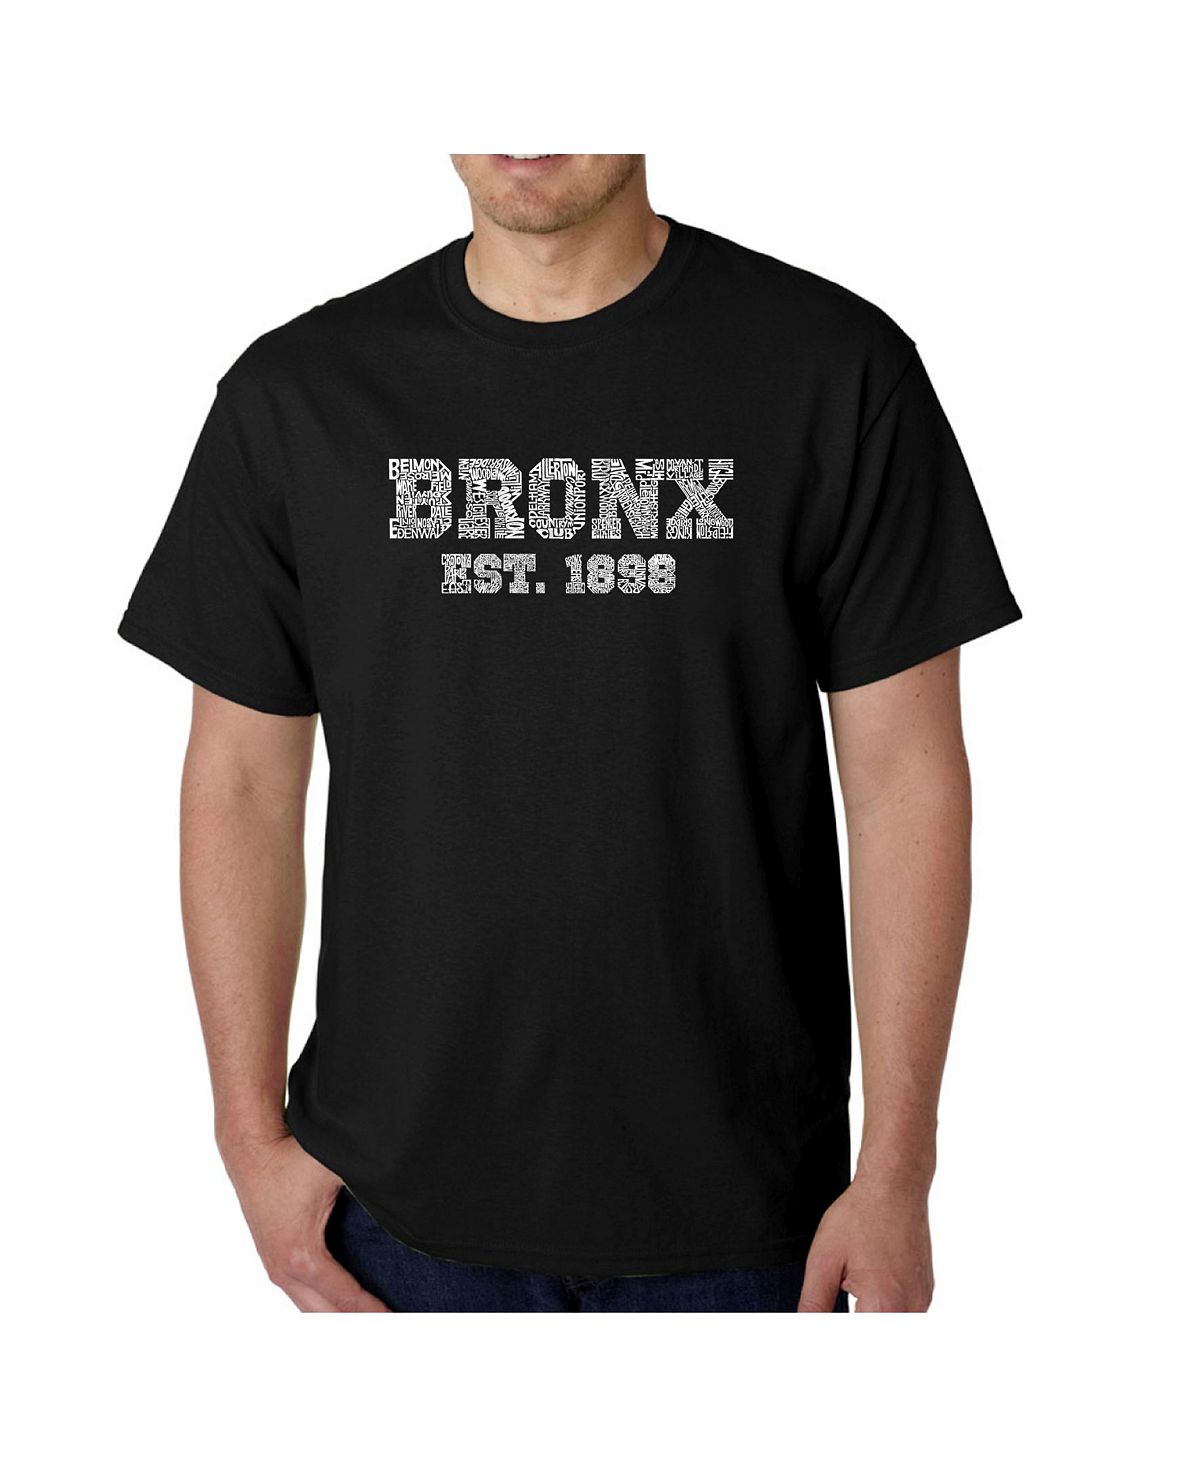 Мужская футболка word art - популярный бронкс, районы нью-йорка LA Pop Art, черный этим утром в нью йорке